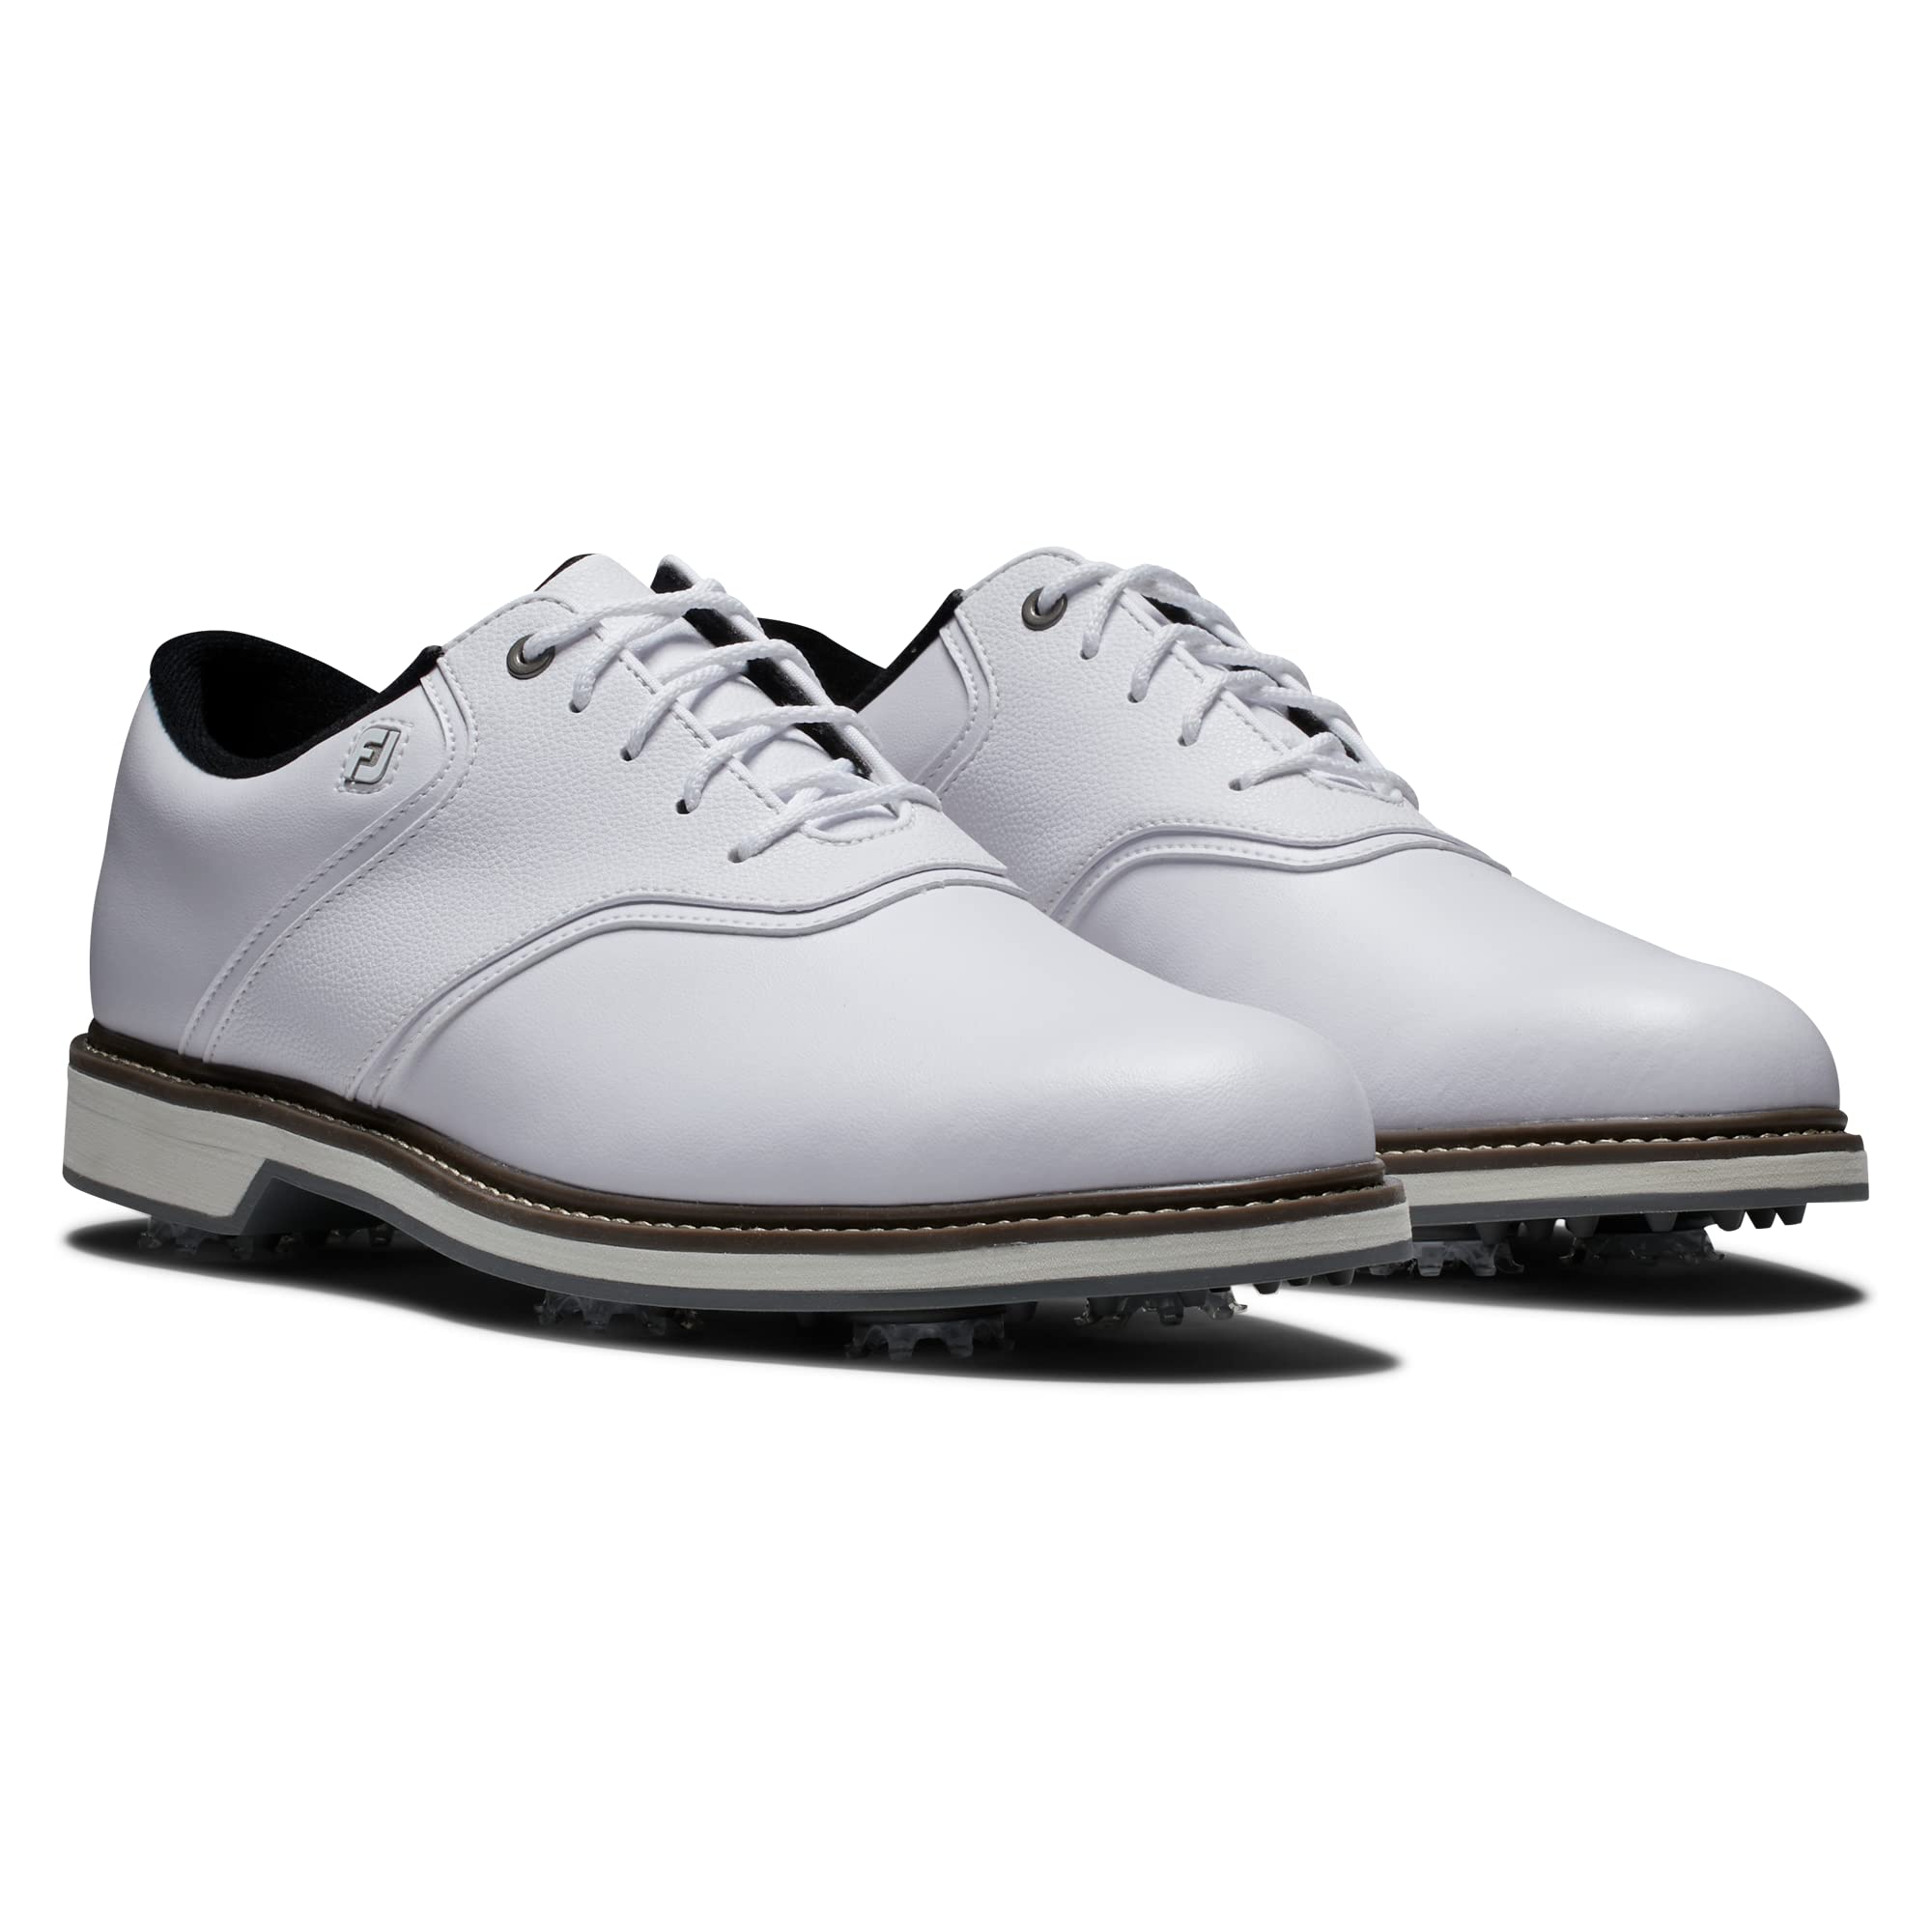 FootJoy Men's Fj Originals Golf Shoe